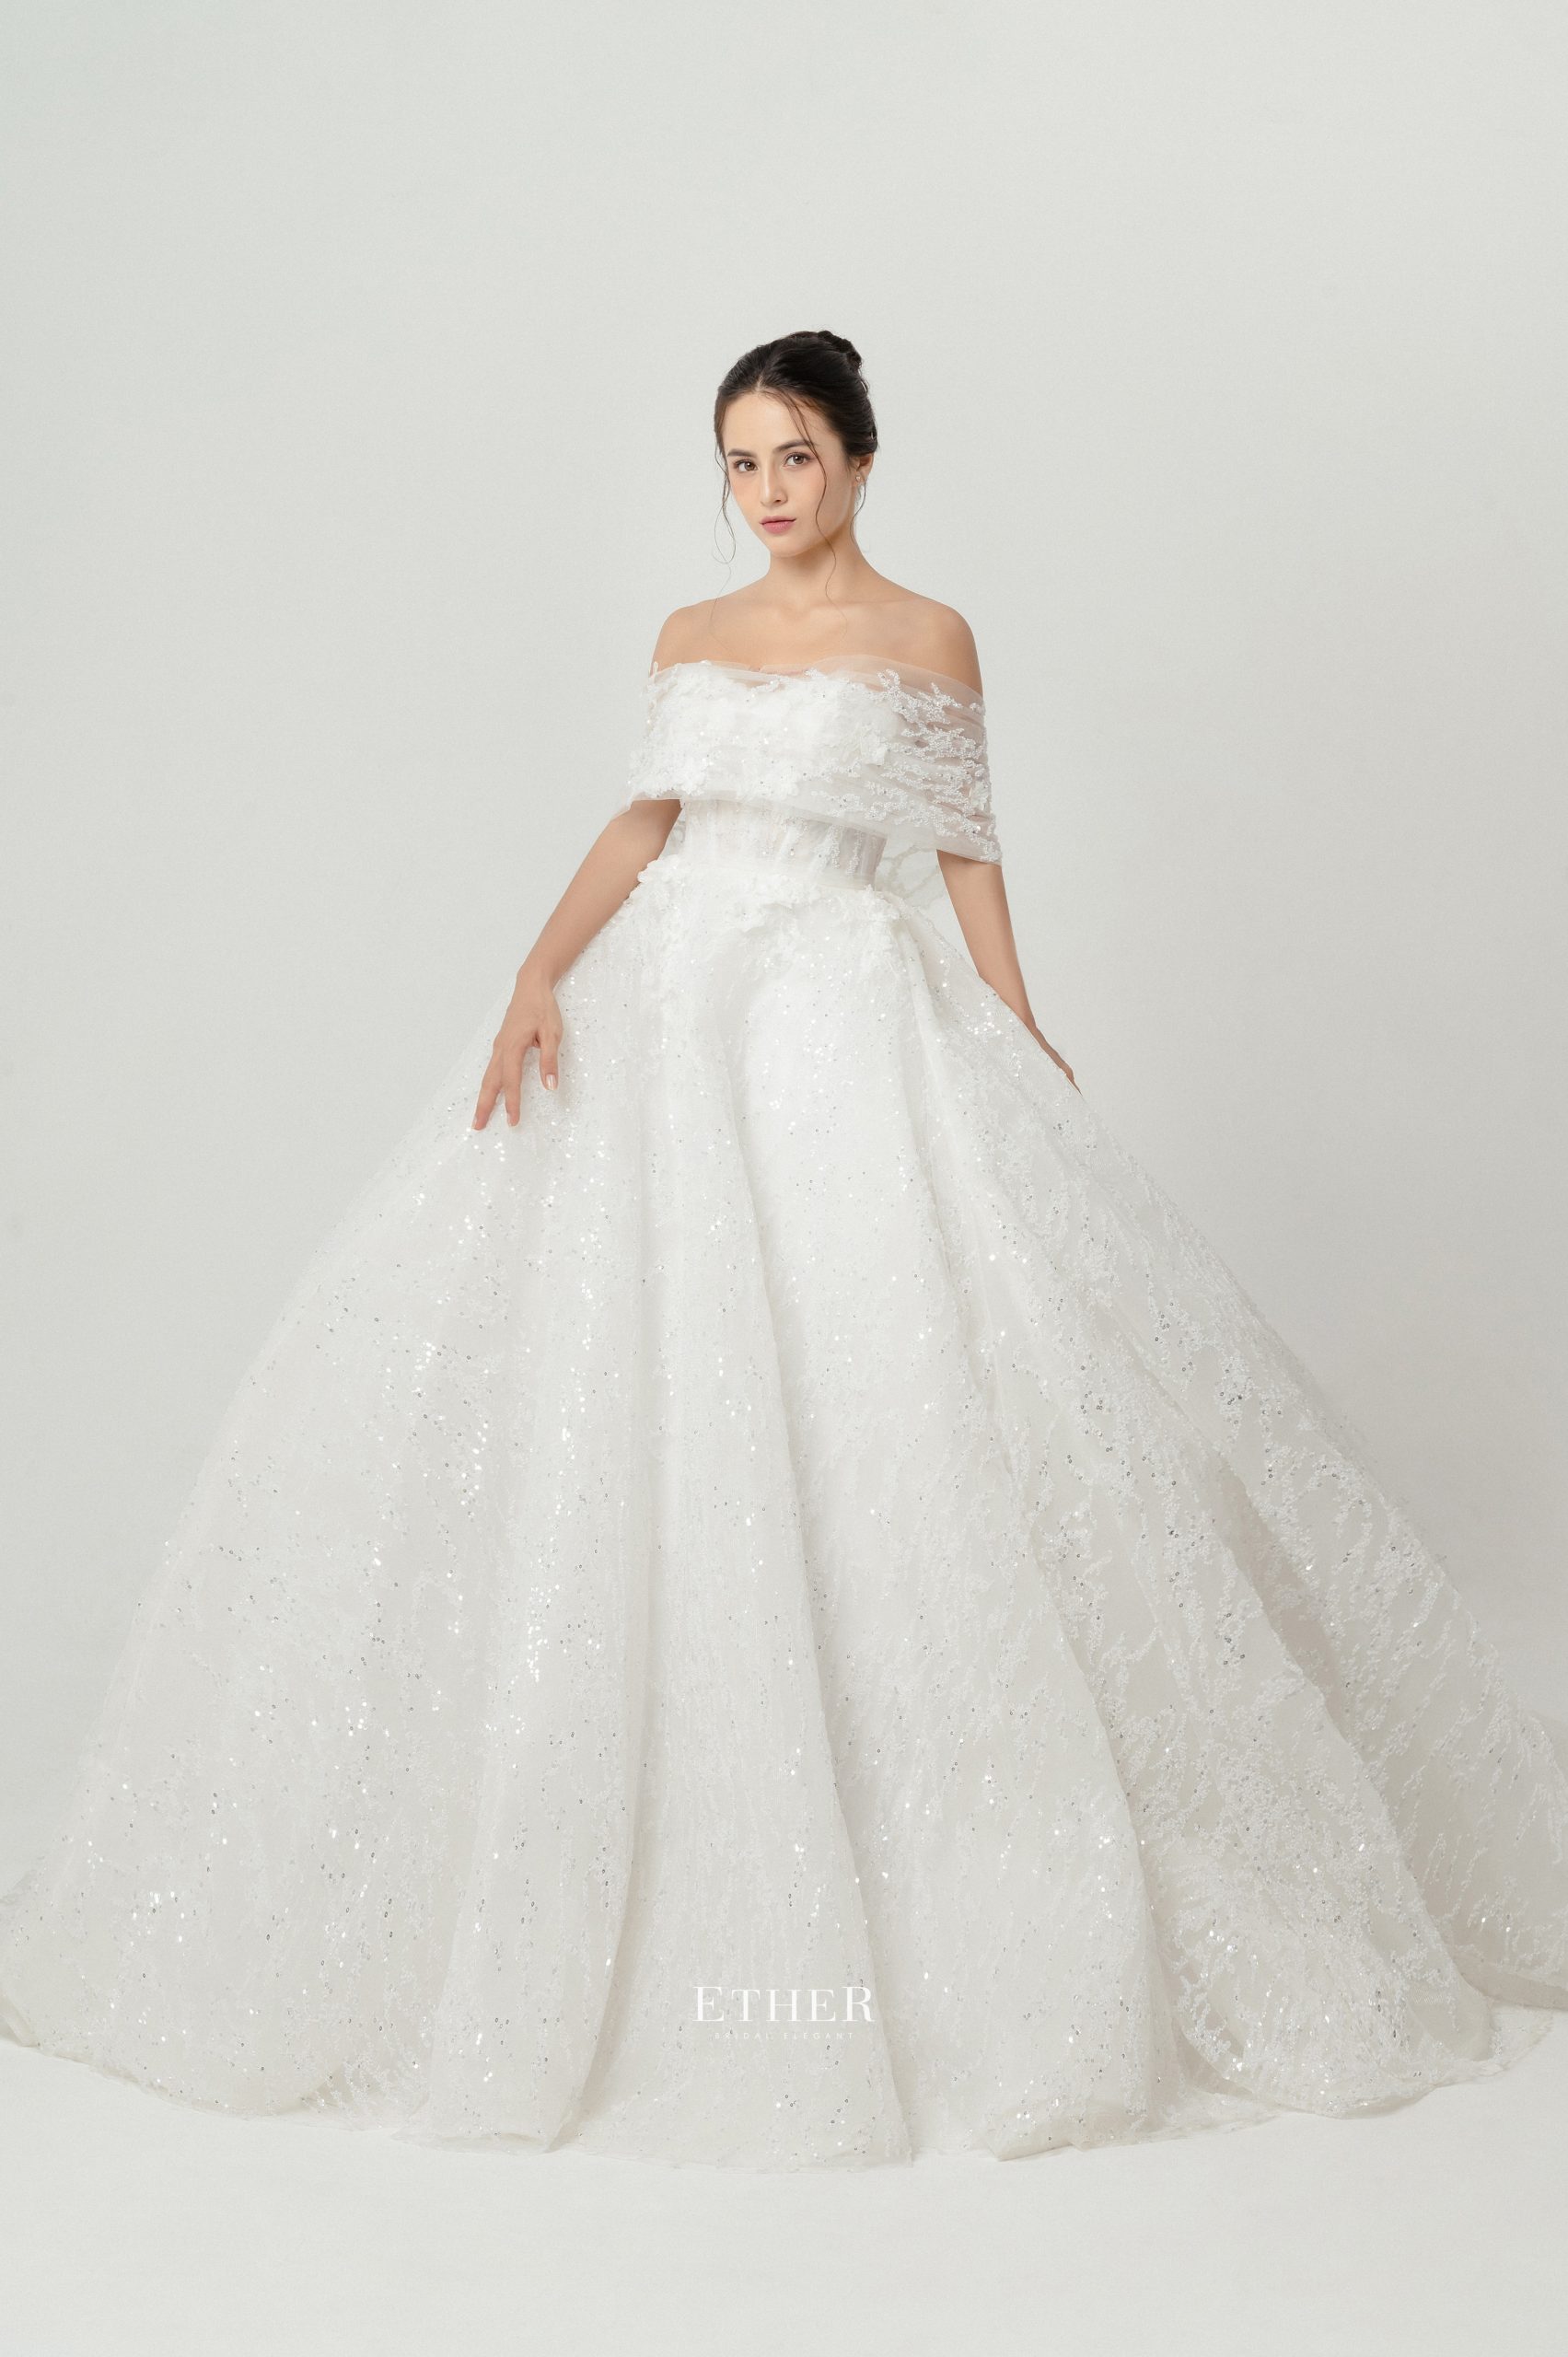 Mẫu váy cưới công chúa được sử dụng với chất liệu mỏng nhẹ, đem lại cảm giác tự nhiên, thoải mái cho cô dâu